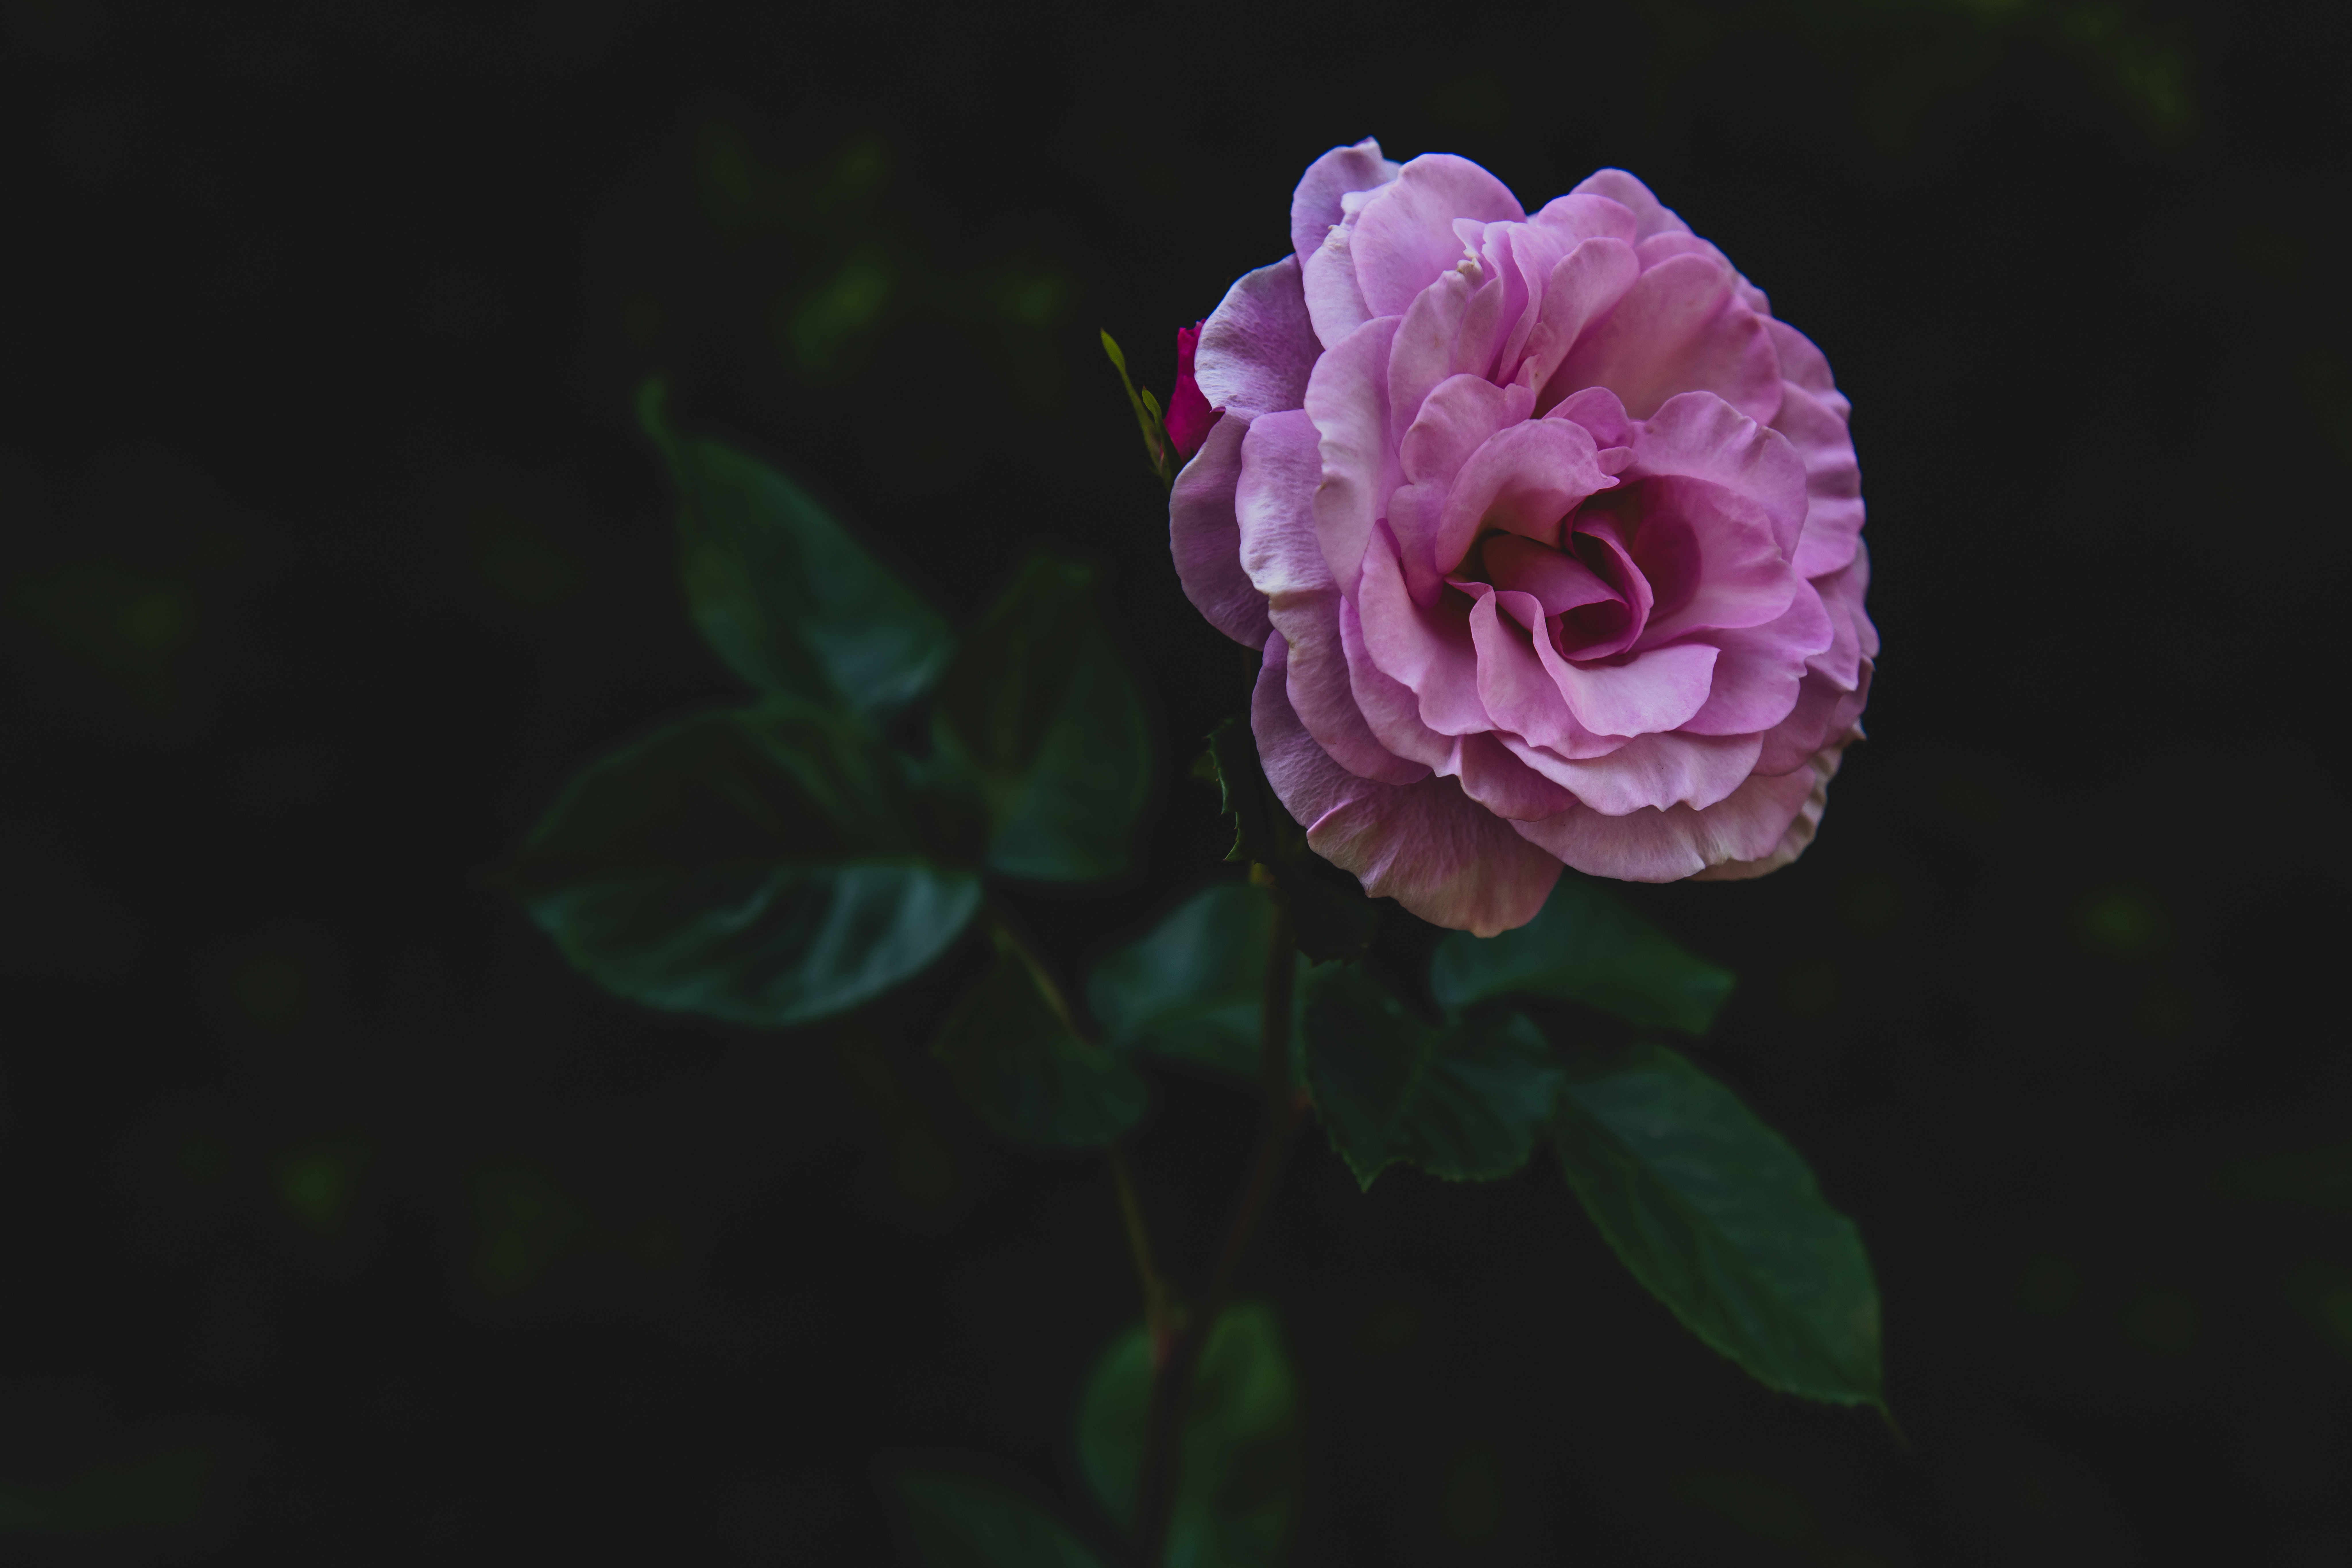 bud, flowers, pink, rose flower, rose, petals, stem, stalk